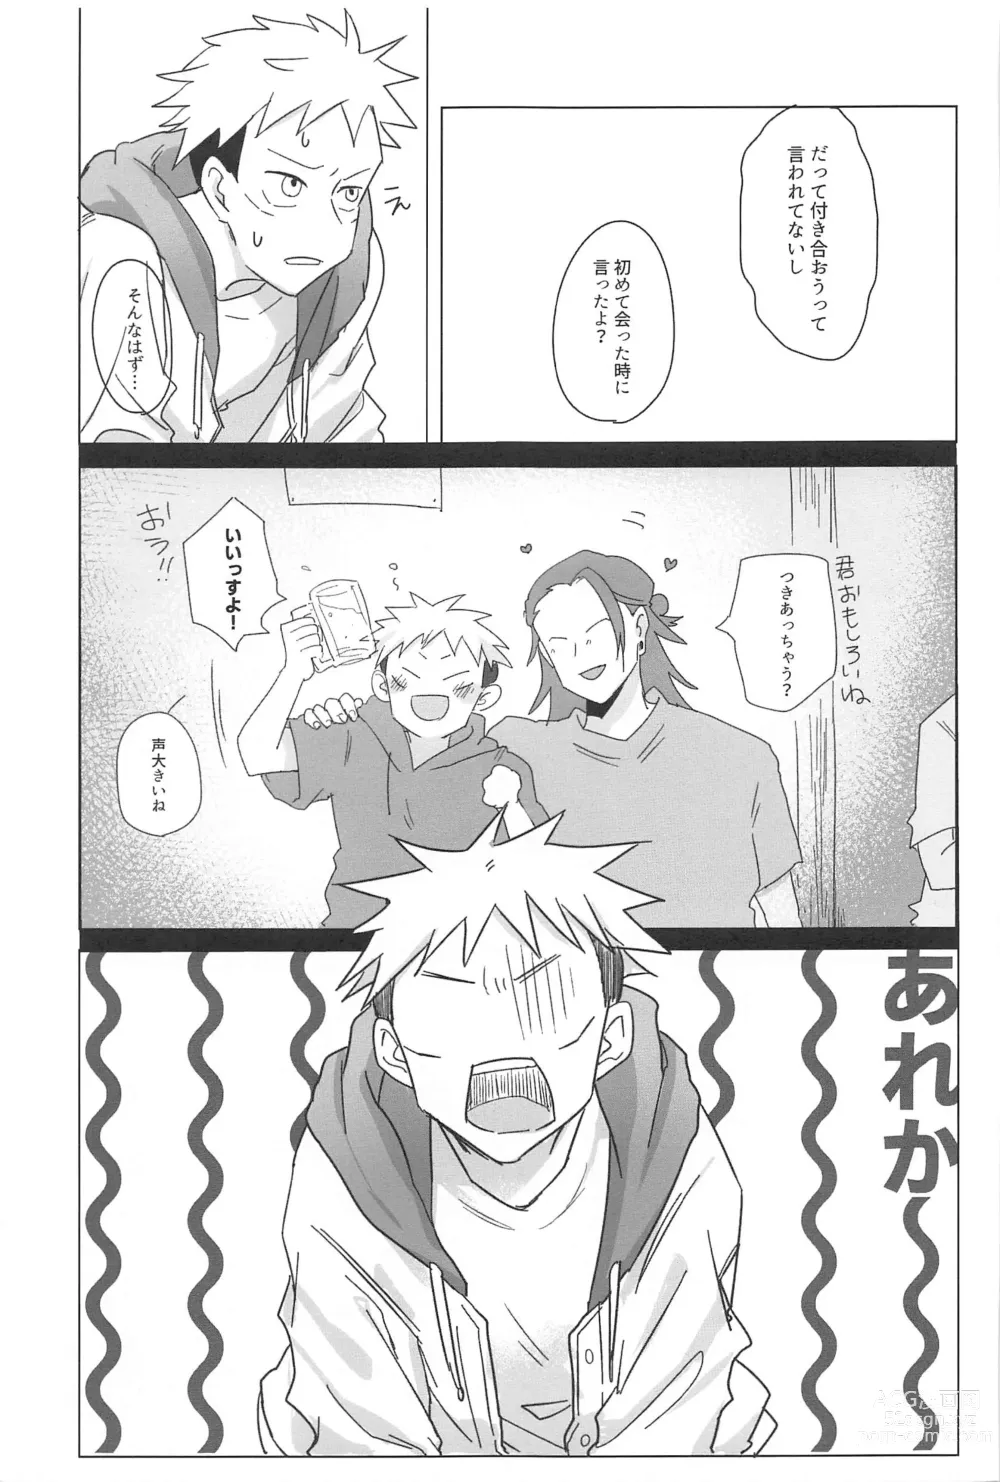 Page 28 of doujinshi Kocchi Muite! Senpai!!